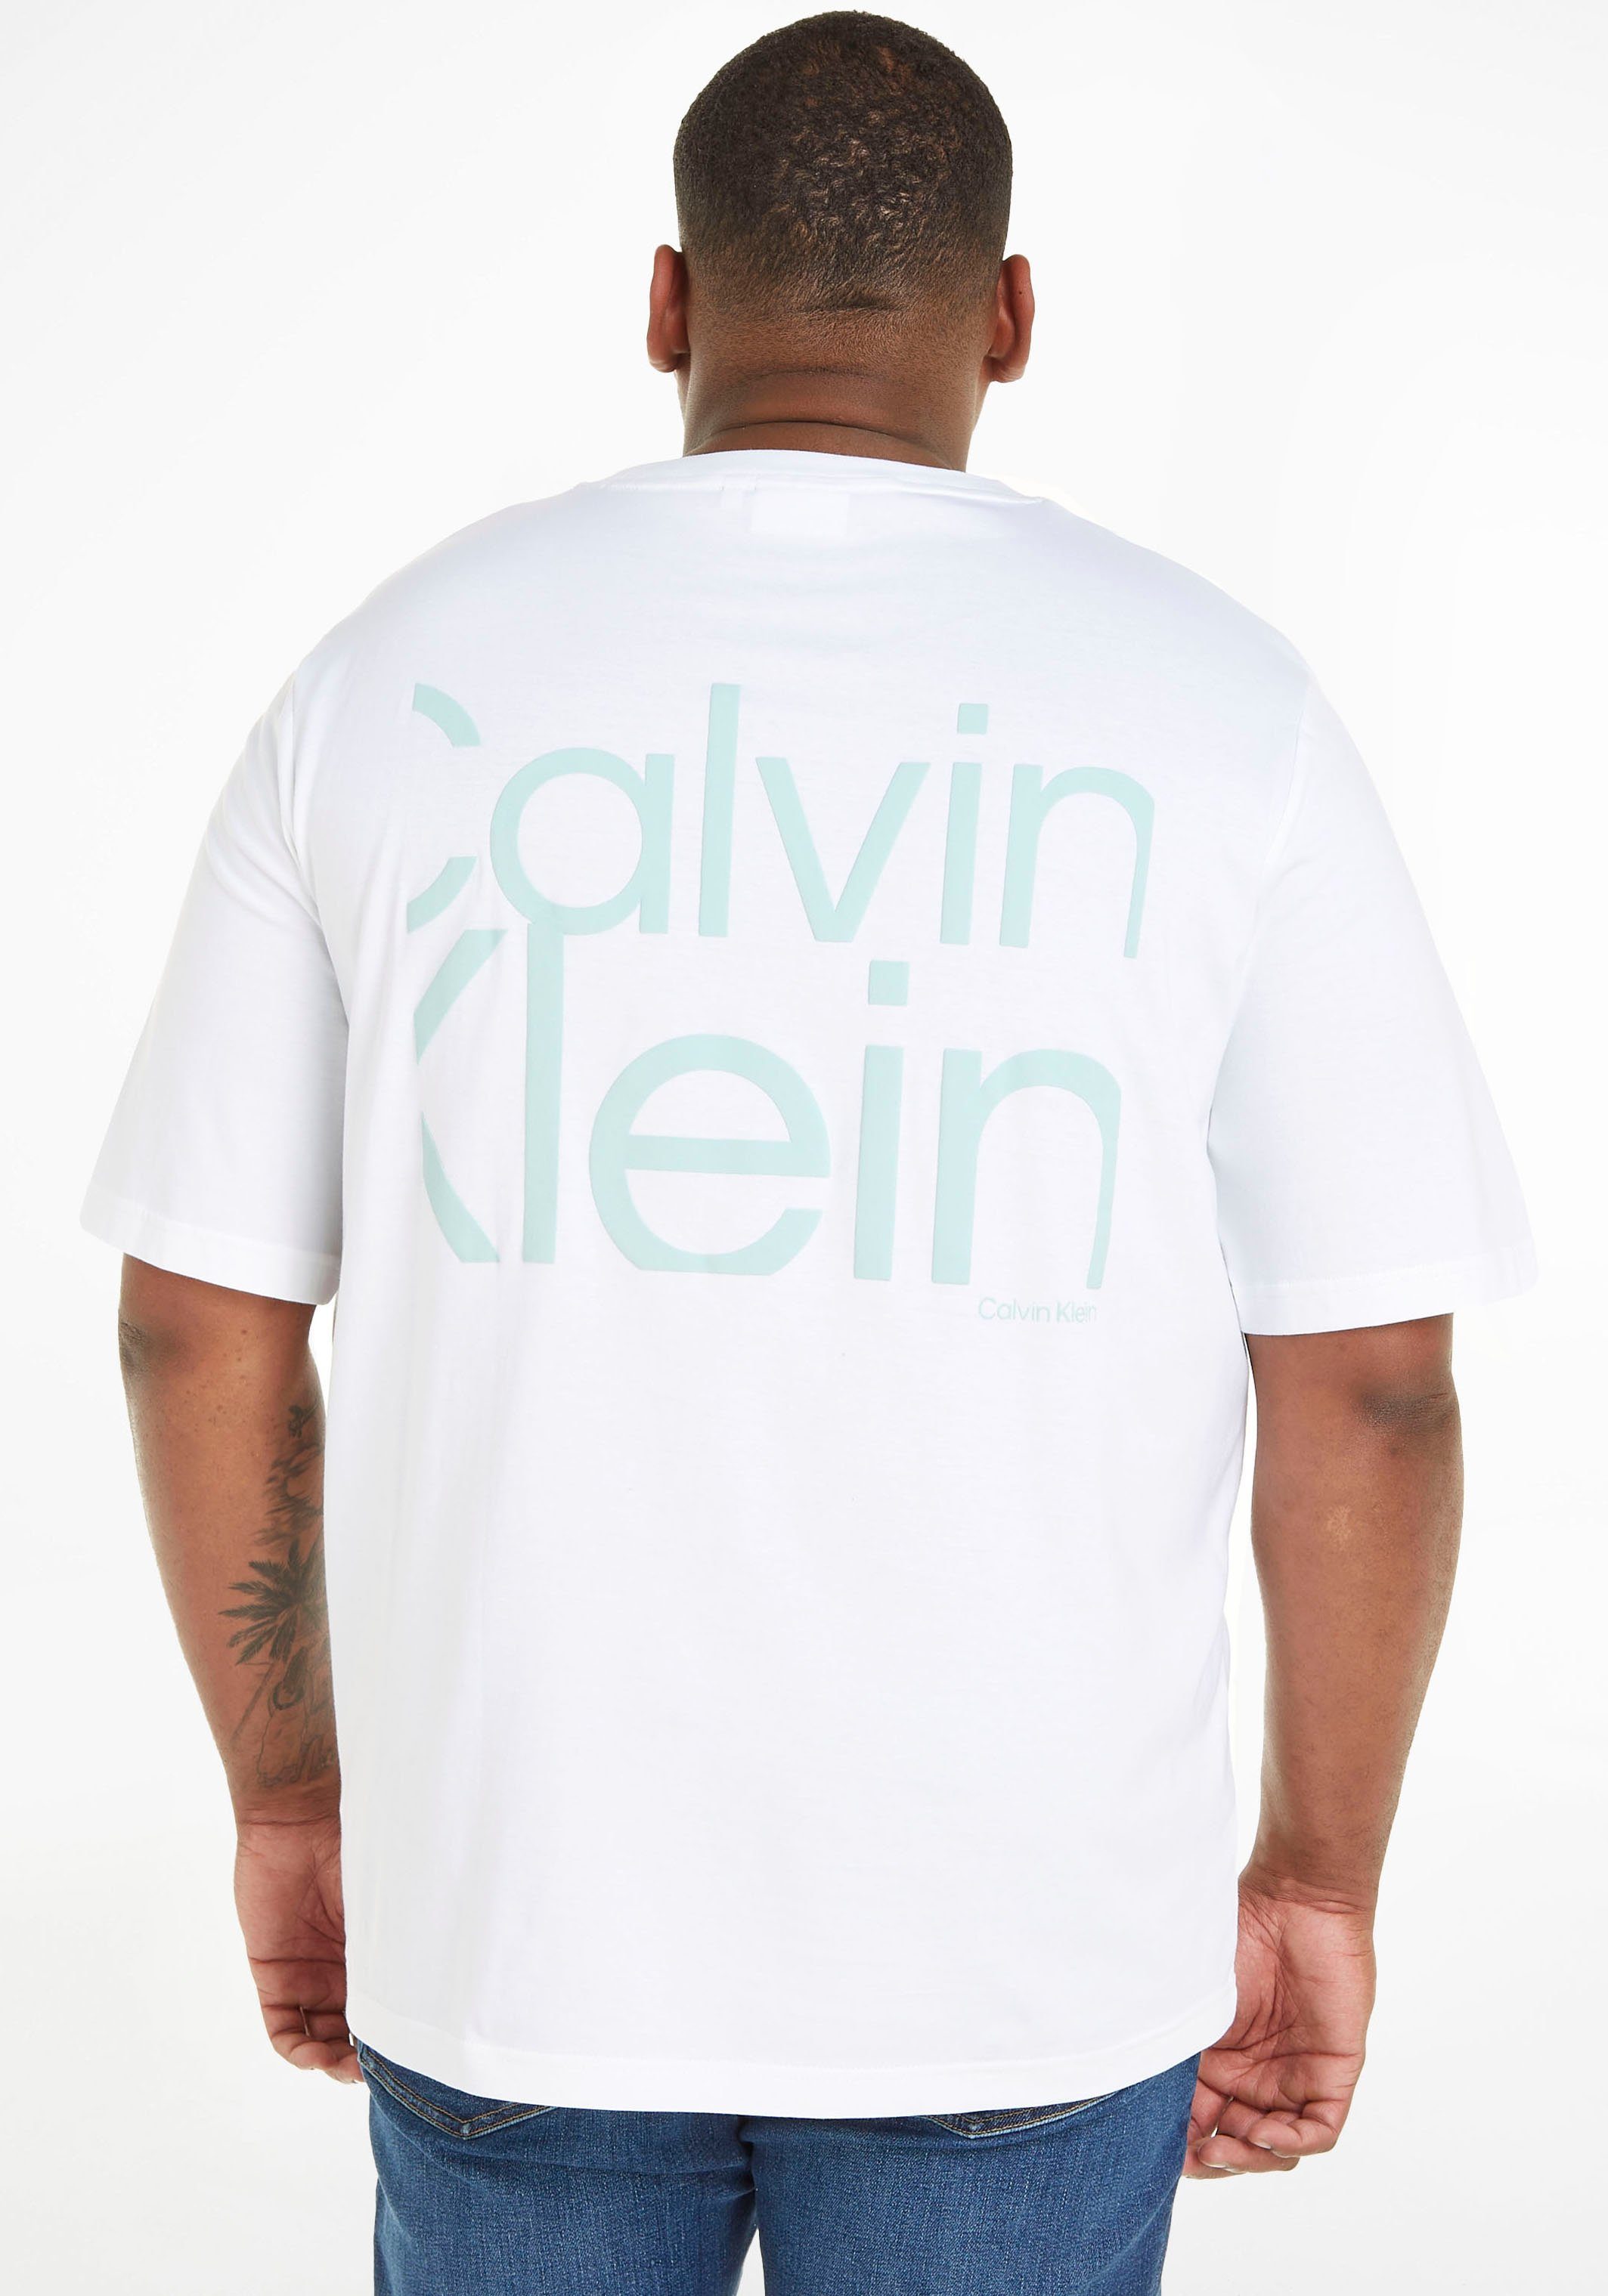 Calvin Klein weiß Logoschriftzug Big&Tall mit Brust der auf T-Shirt